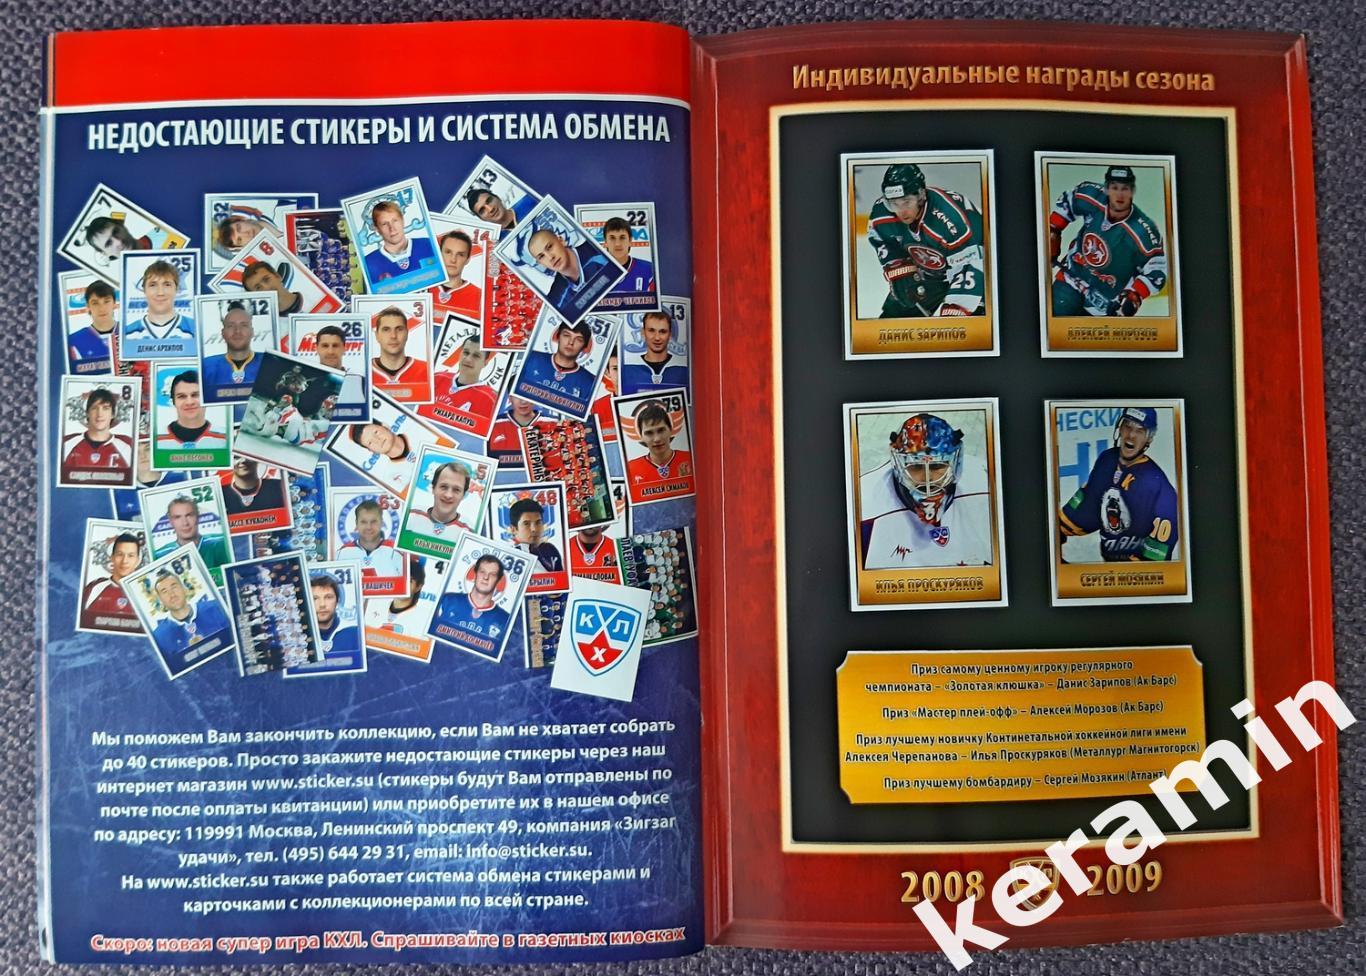 АльбомКХЛ 2009-10. Коллекция стикеров 2009-10. 7